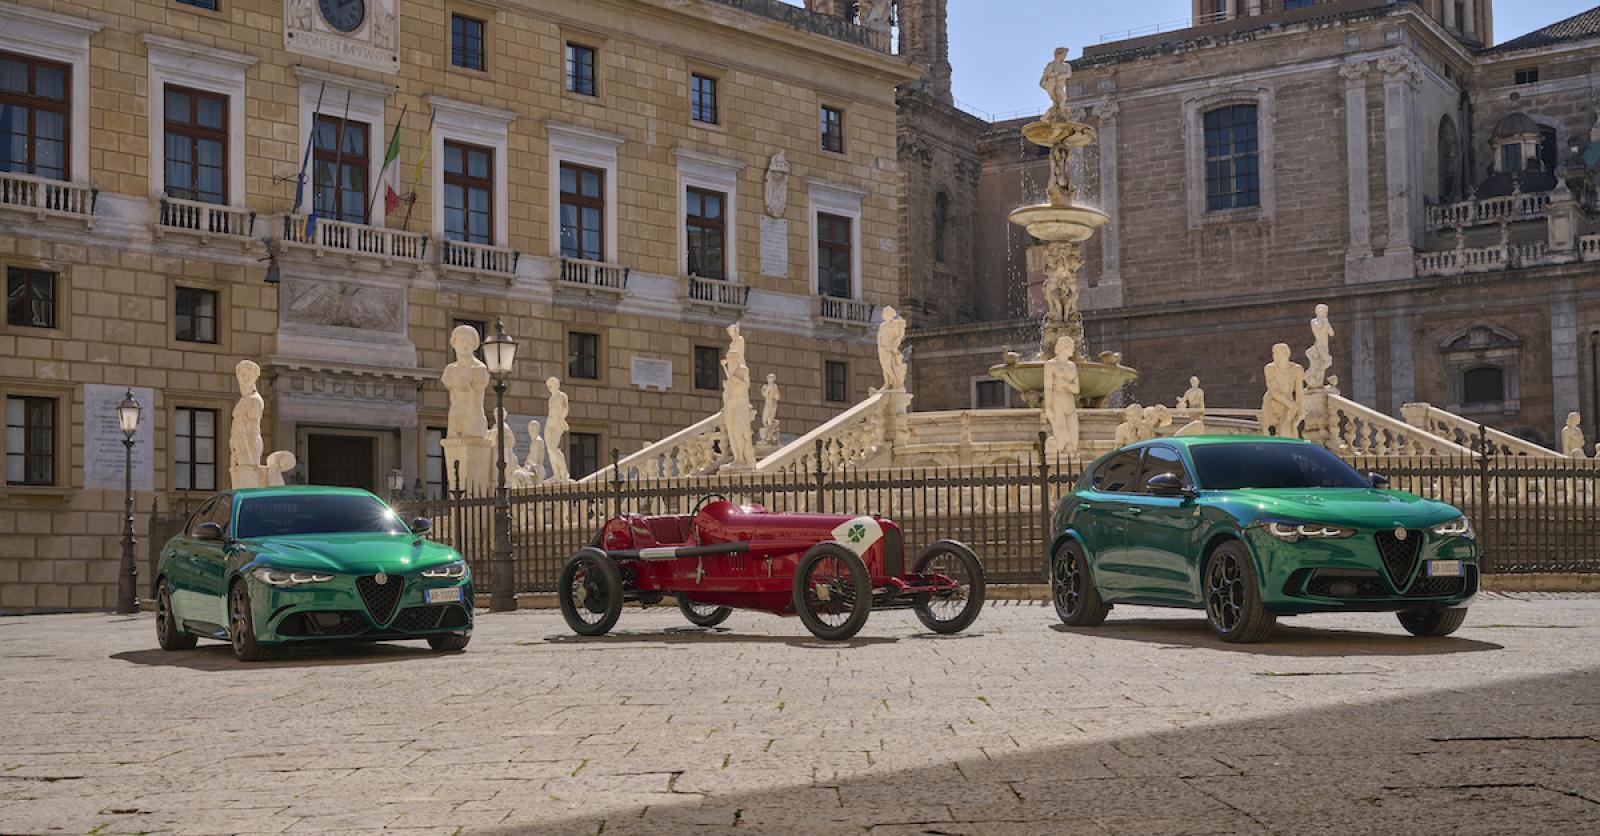 Alfa Romeo celebrates the 100th anniversary of the Quadrifoglio